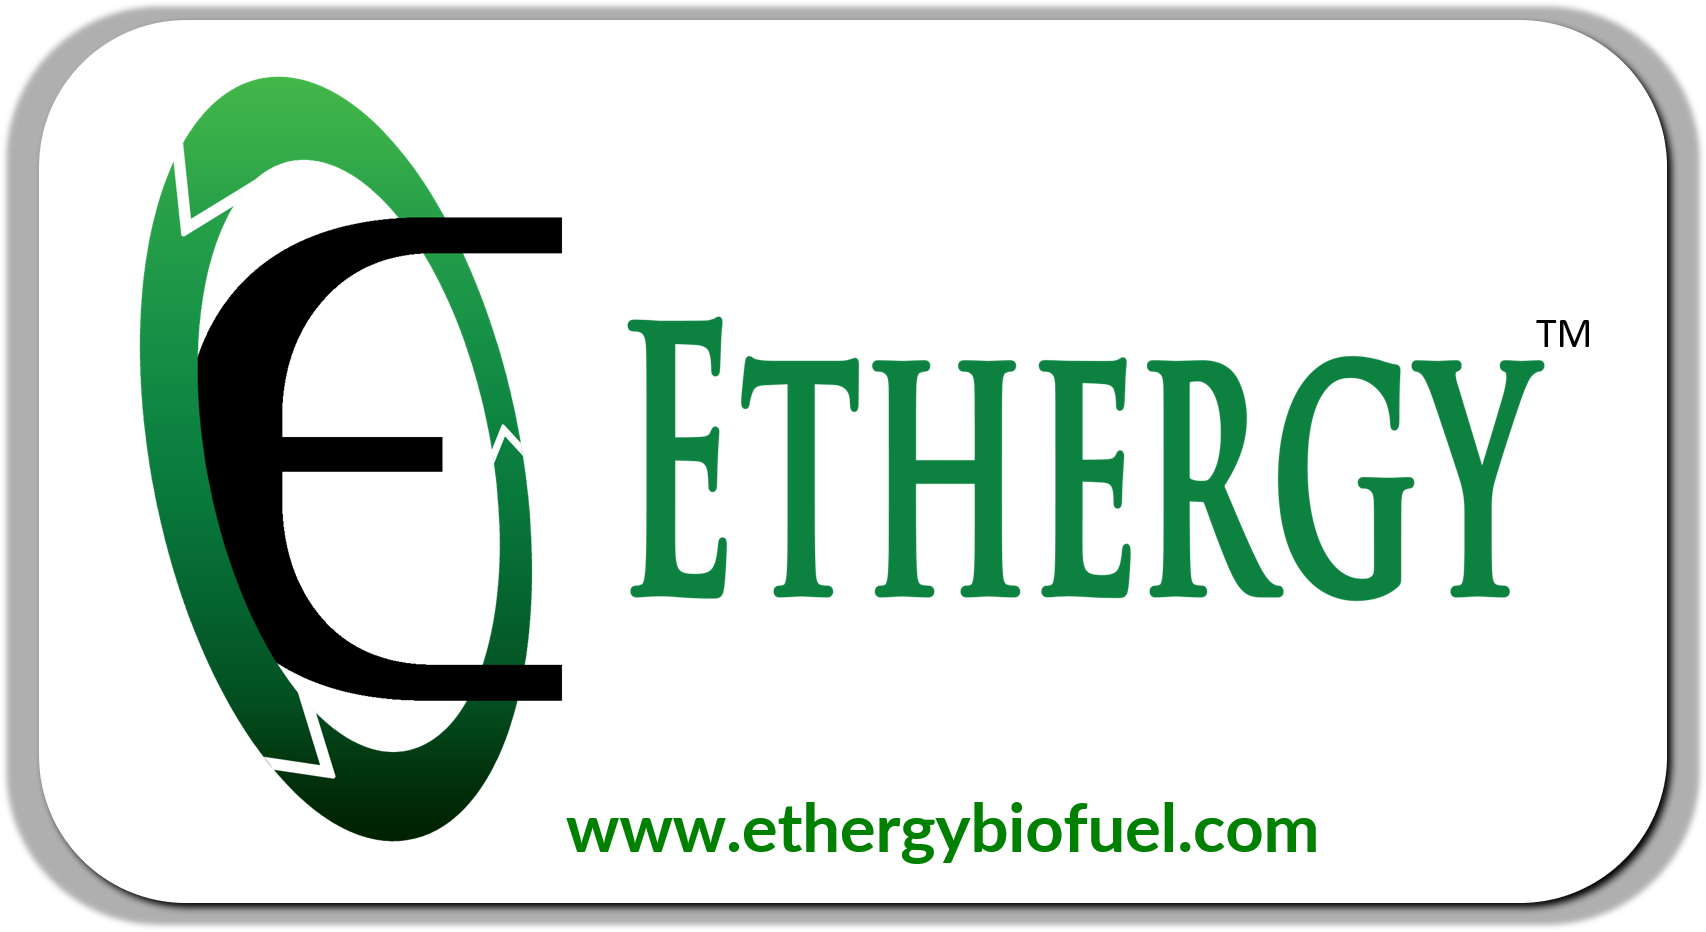 Ethergy Biofuels